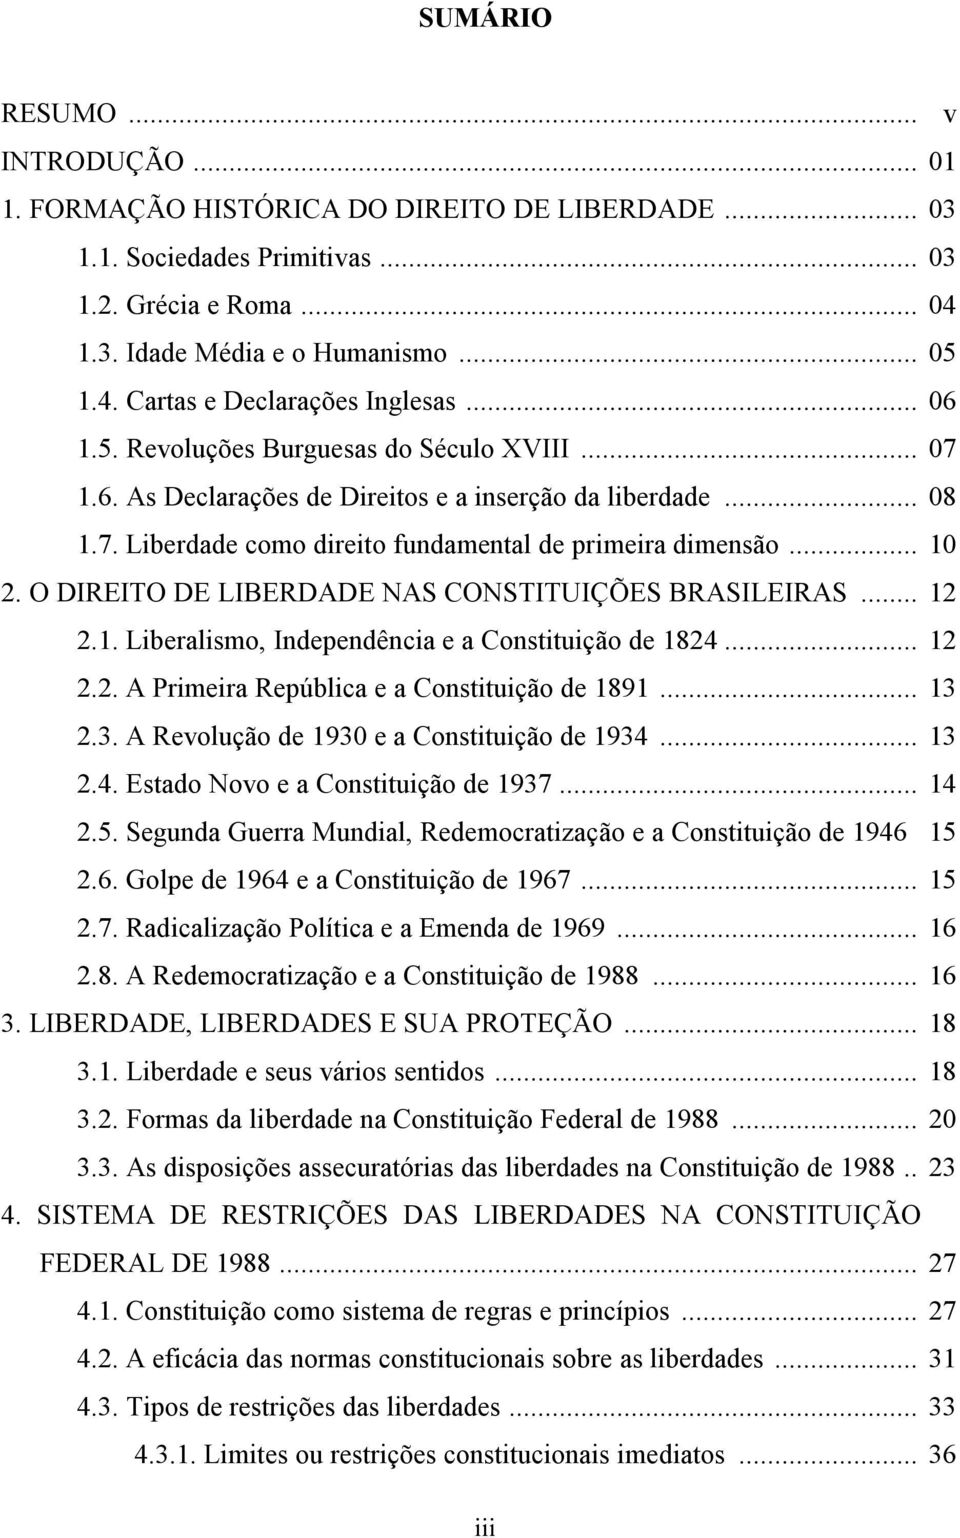 O DIREITO DE LIBERDADE NAS CONSTITUIÇÕES BRASILEIRAS... 12 2.1. Liberalismo, Independência e a Constituição de 1824... 12 2.2. A Primeira República e a Constituição de 1891... 13 